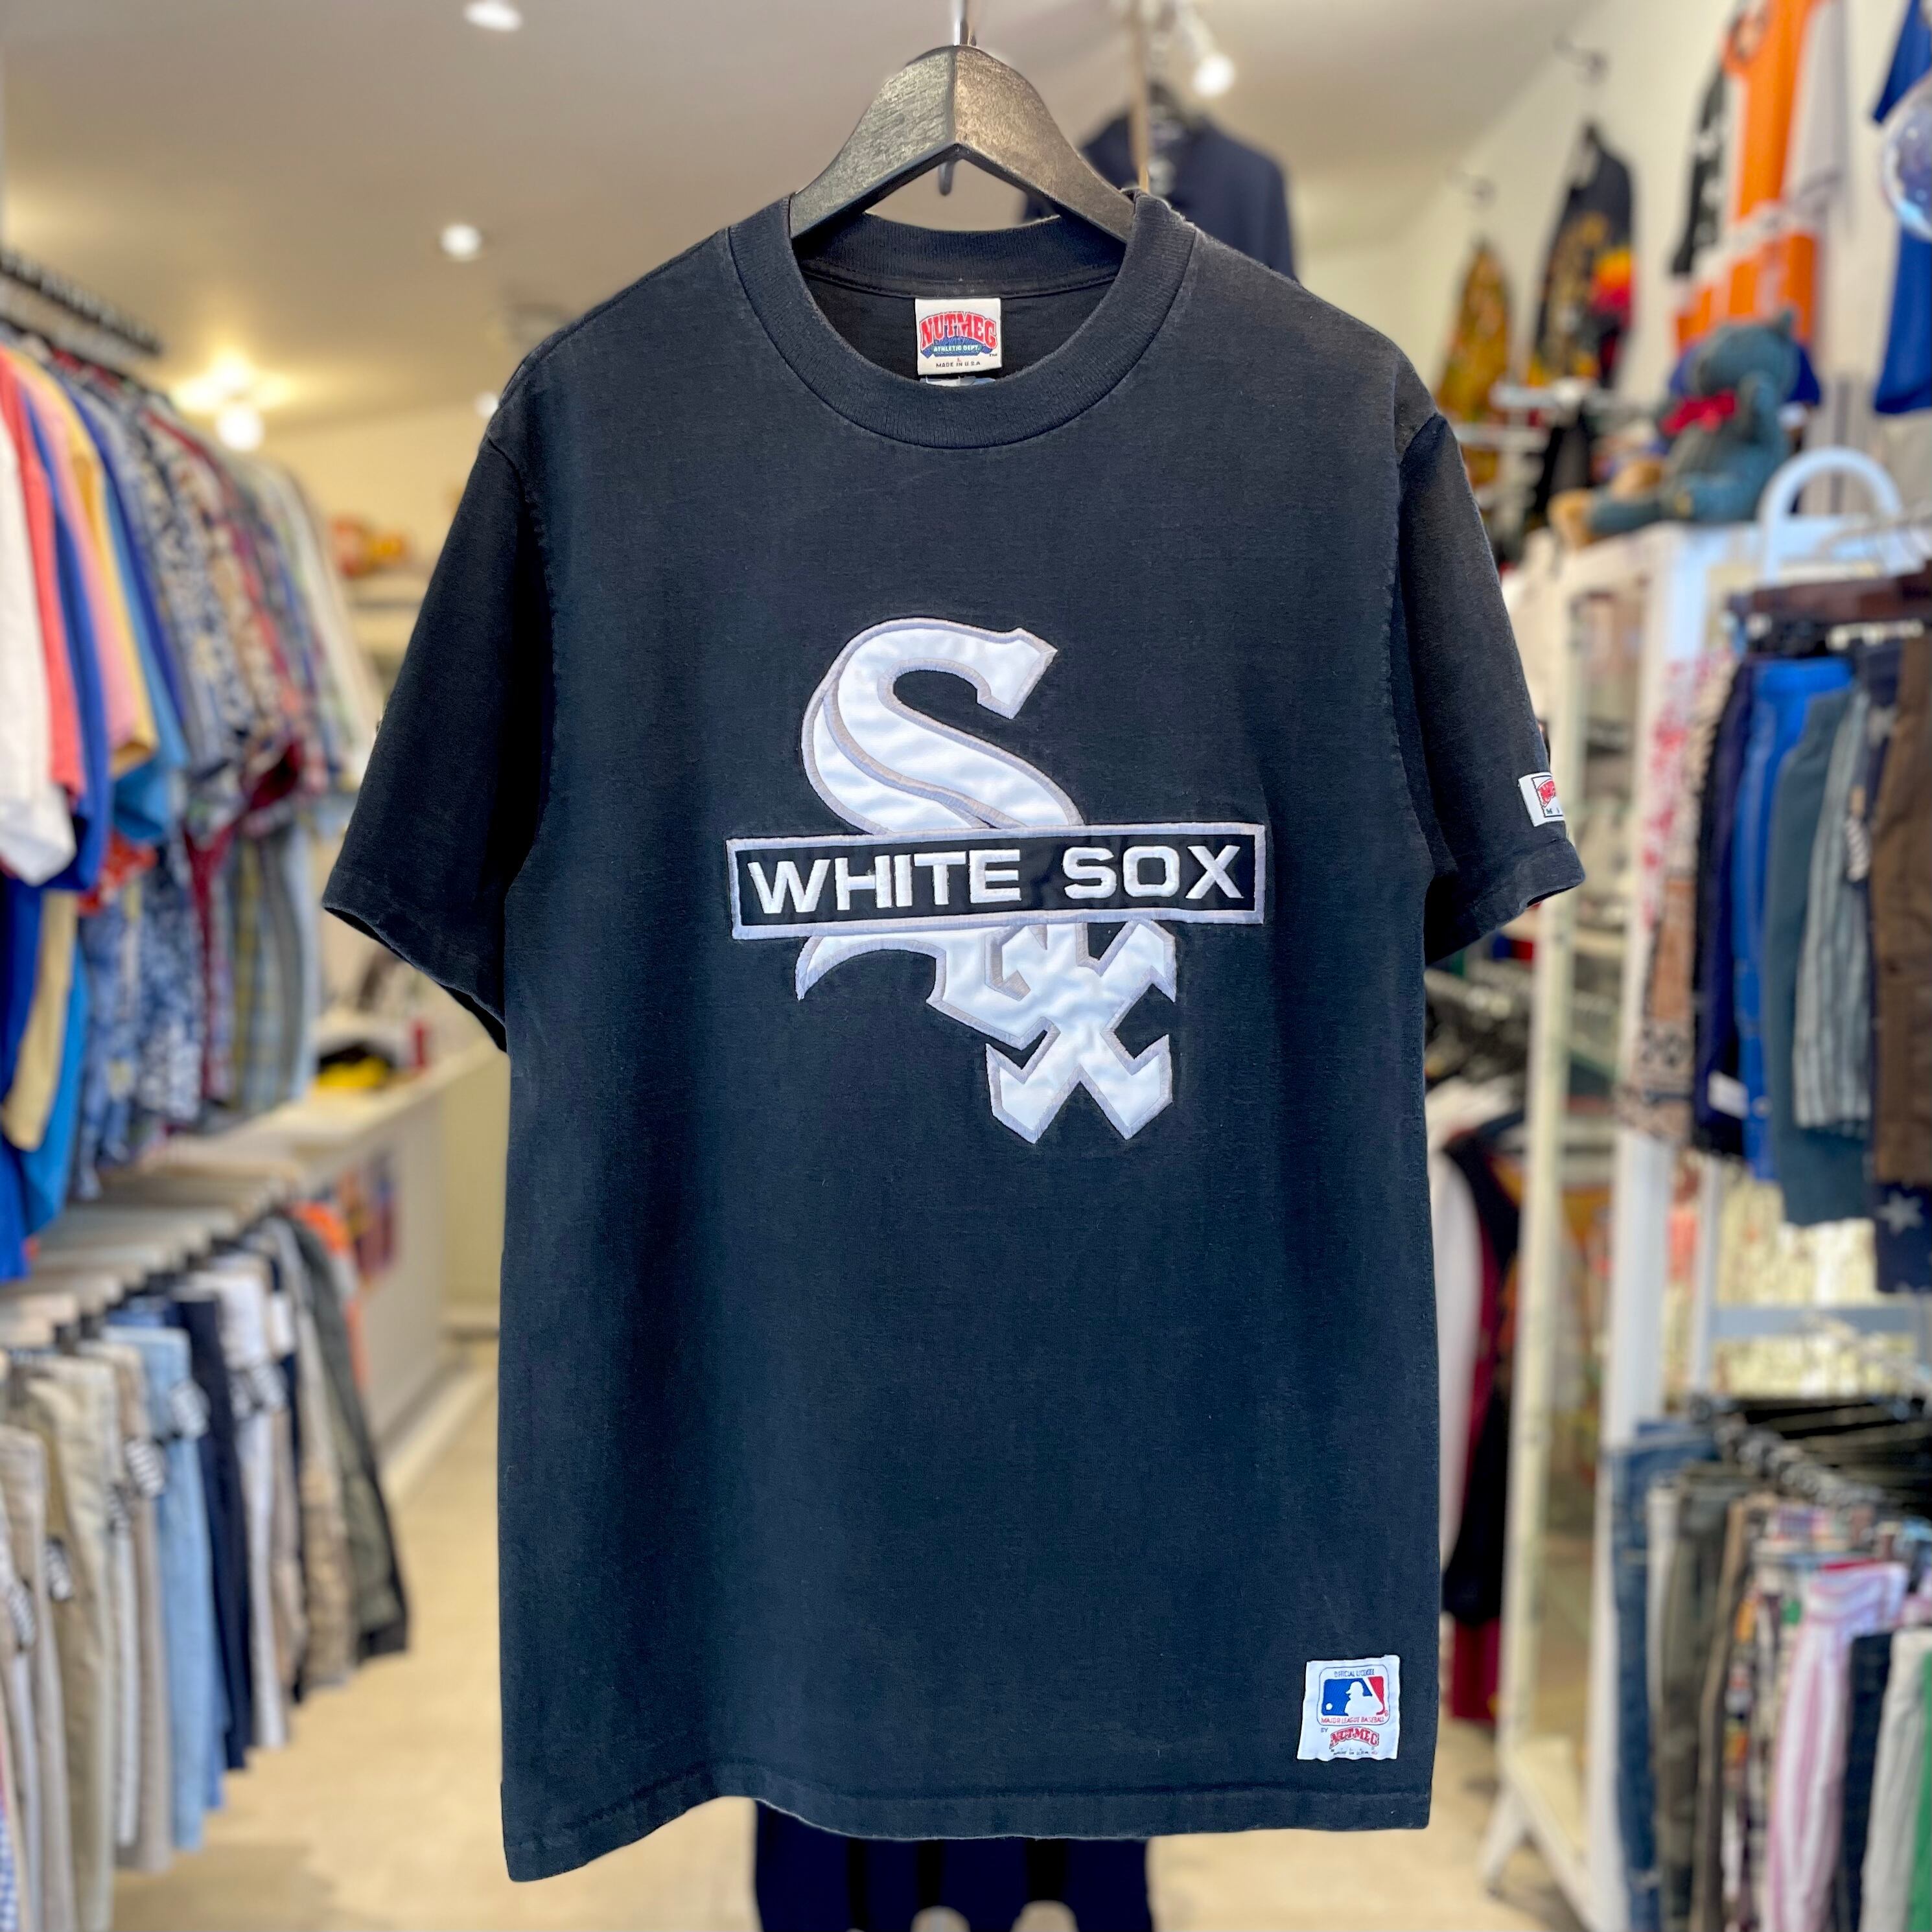 USA製 CHICAGO WHITE SOX ホワイトソックス MLB Tシャツ